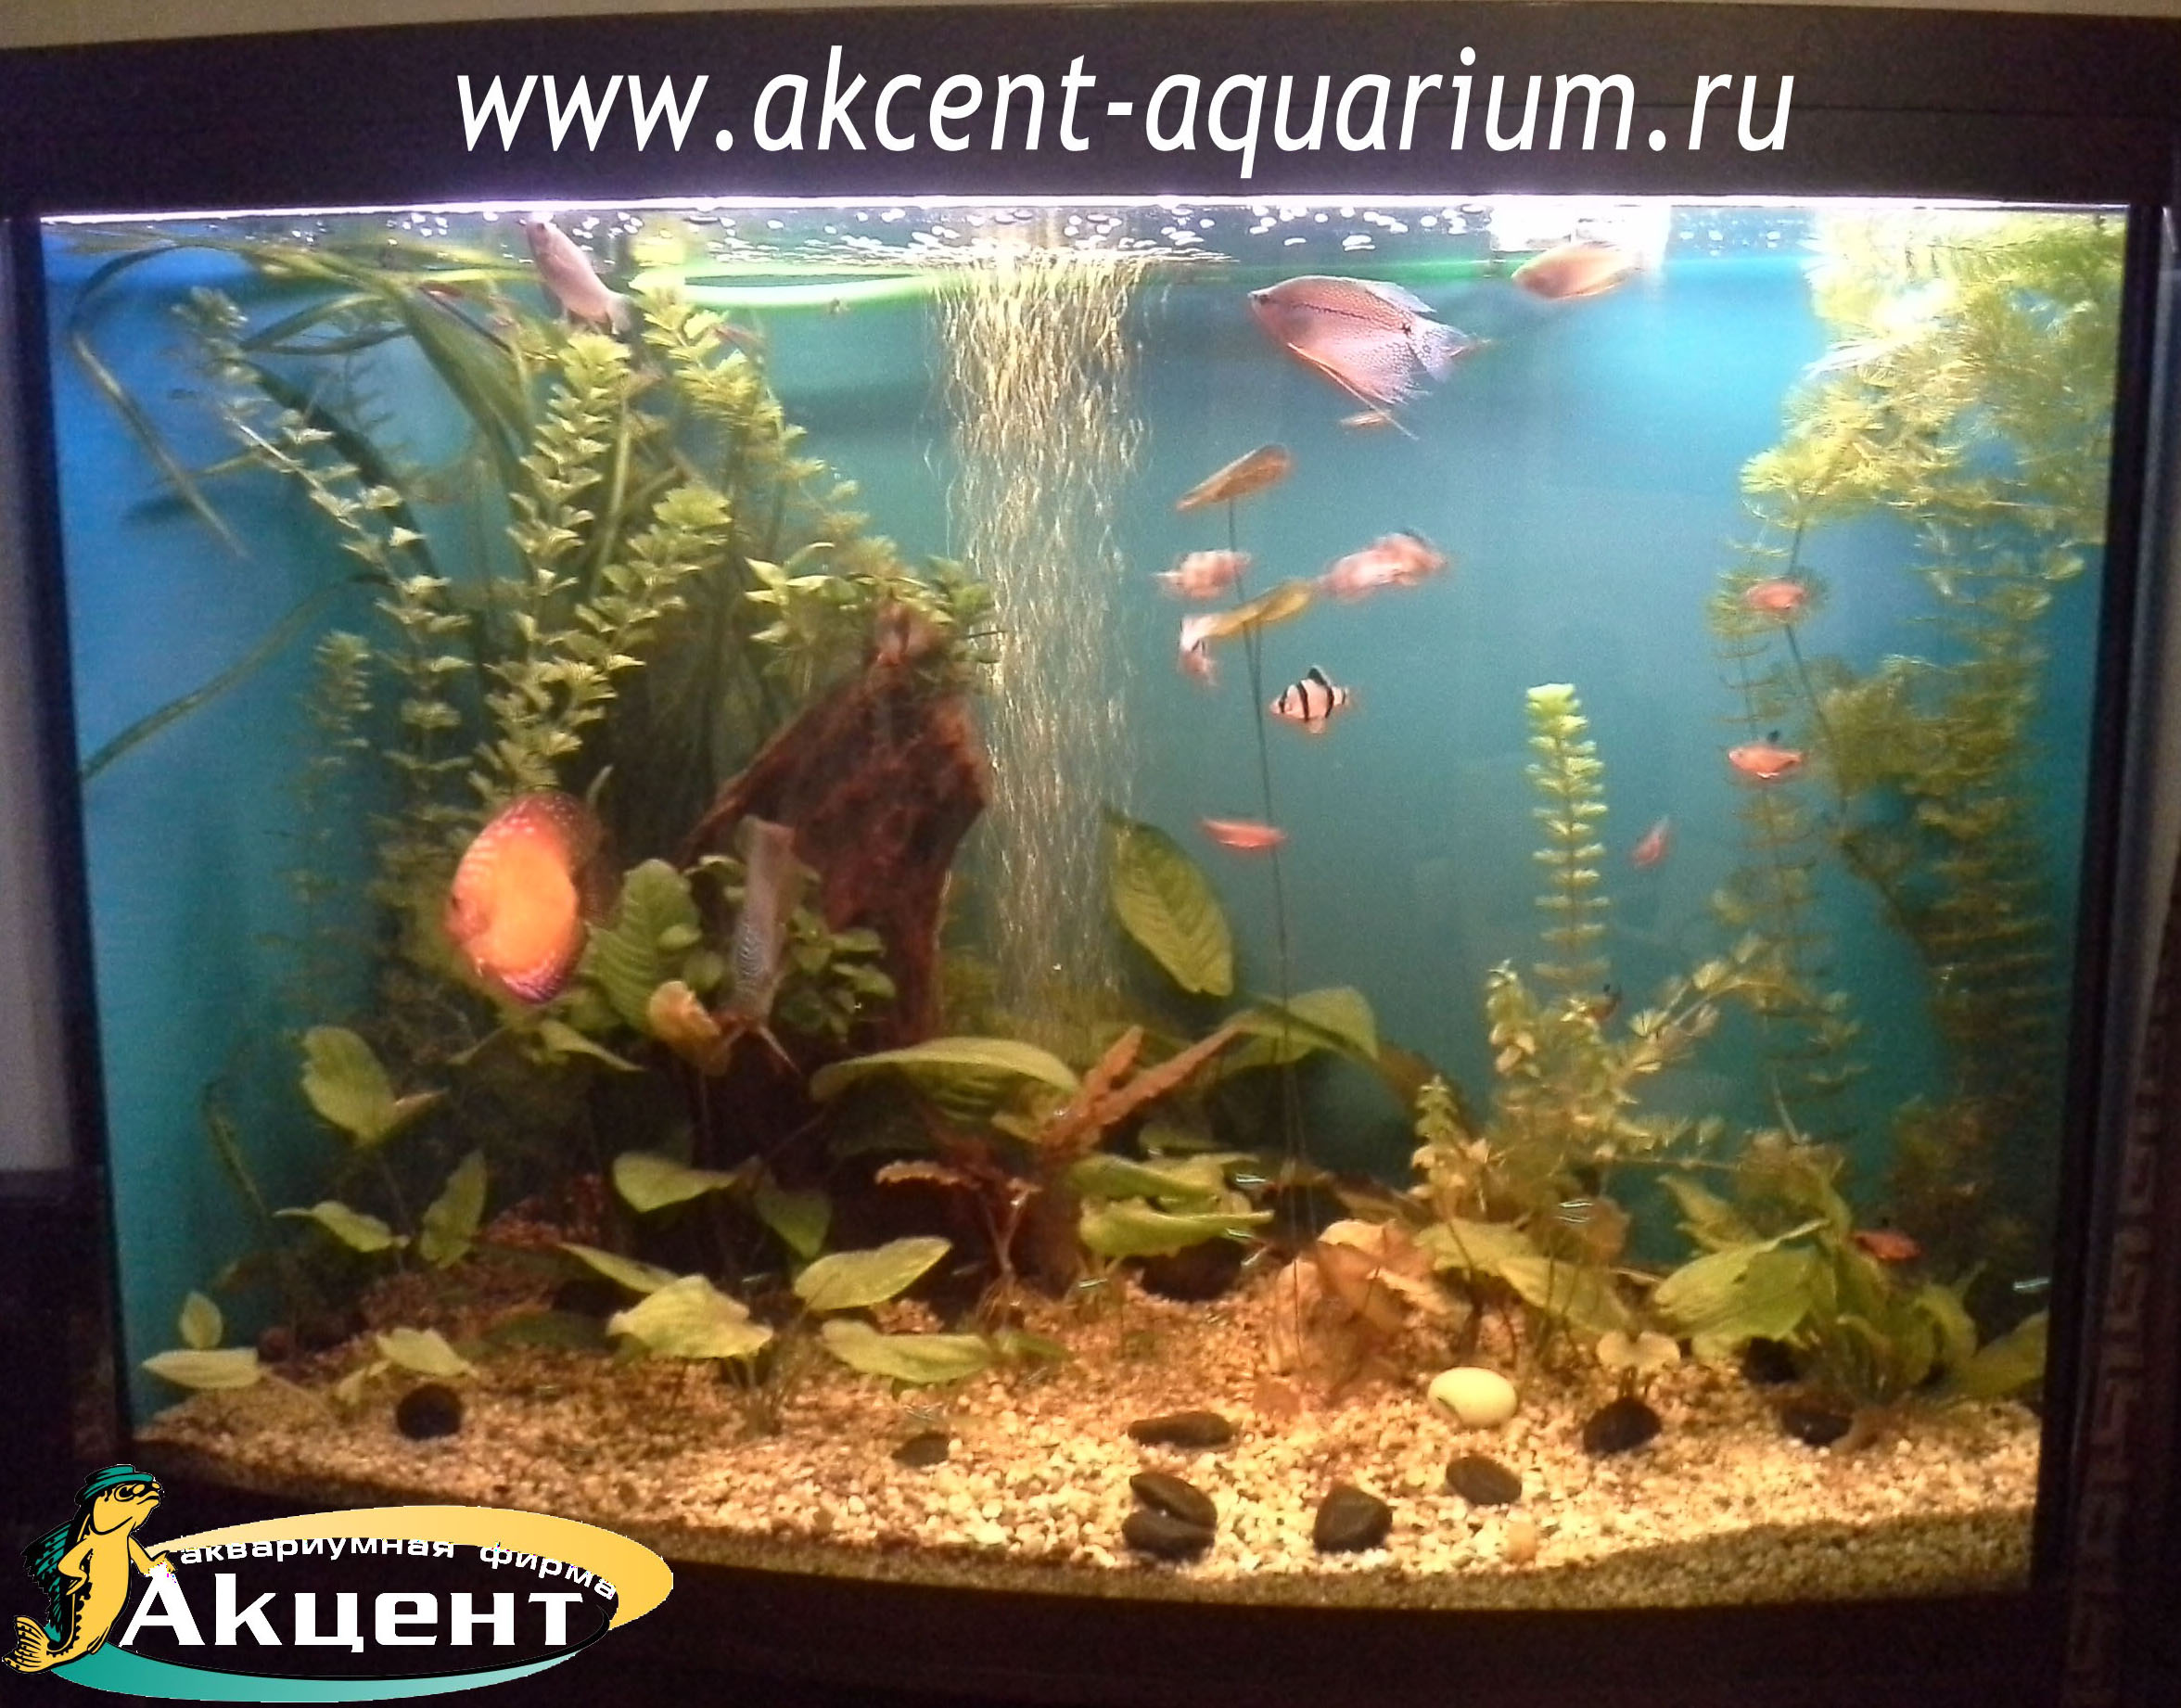 Акцент-аквариум, аквариум 300 литров, дискусы, гурами, барбусы коряга, живые растения.